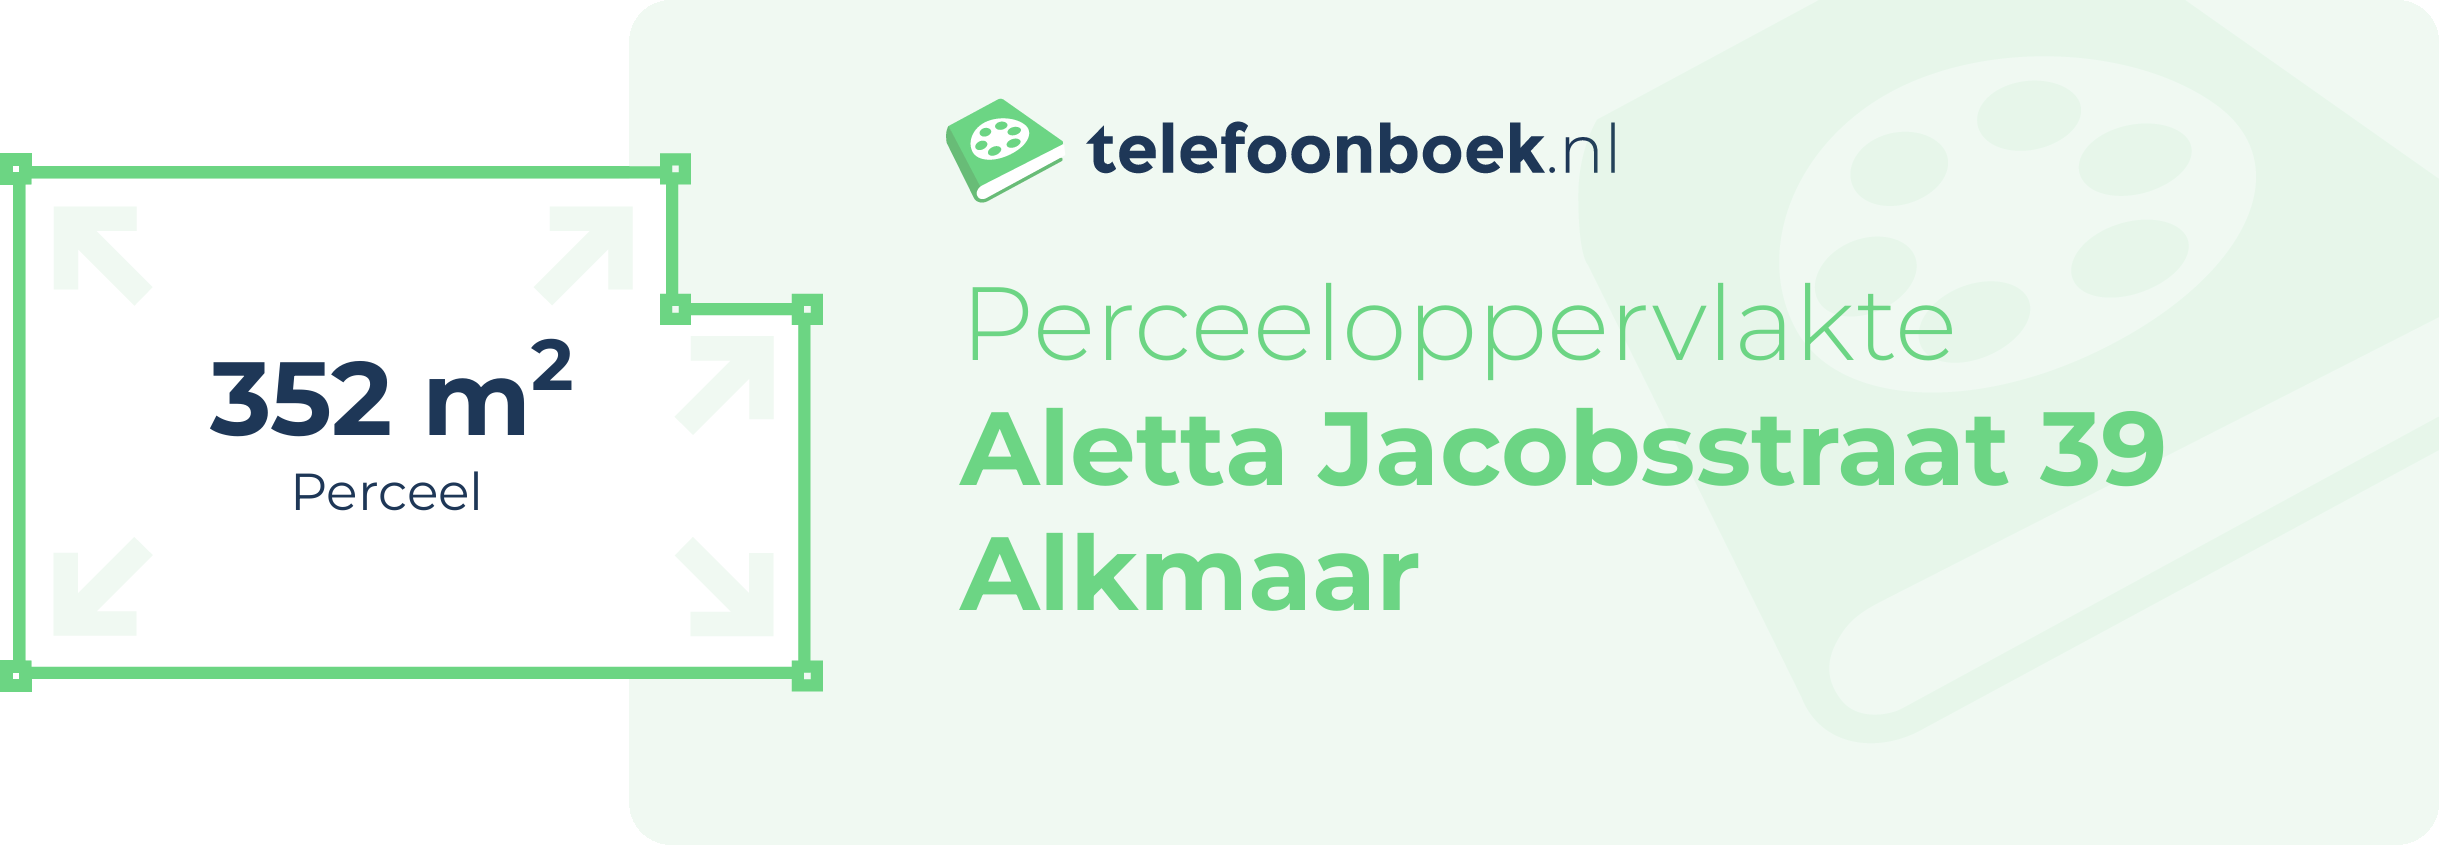 Perceeloppervlakte Aletta Jacobsstraat 39 Alkmaar